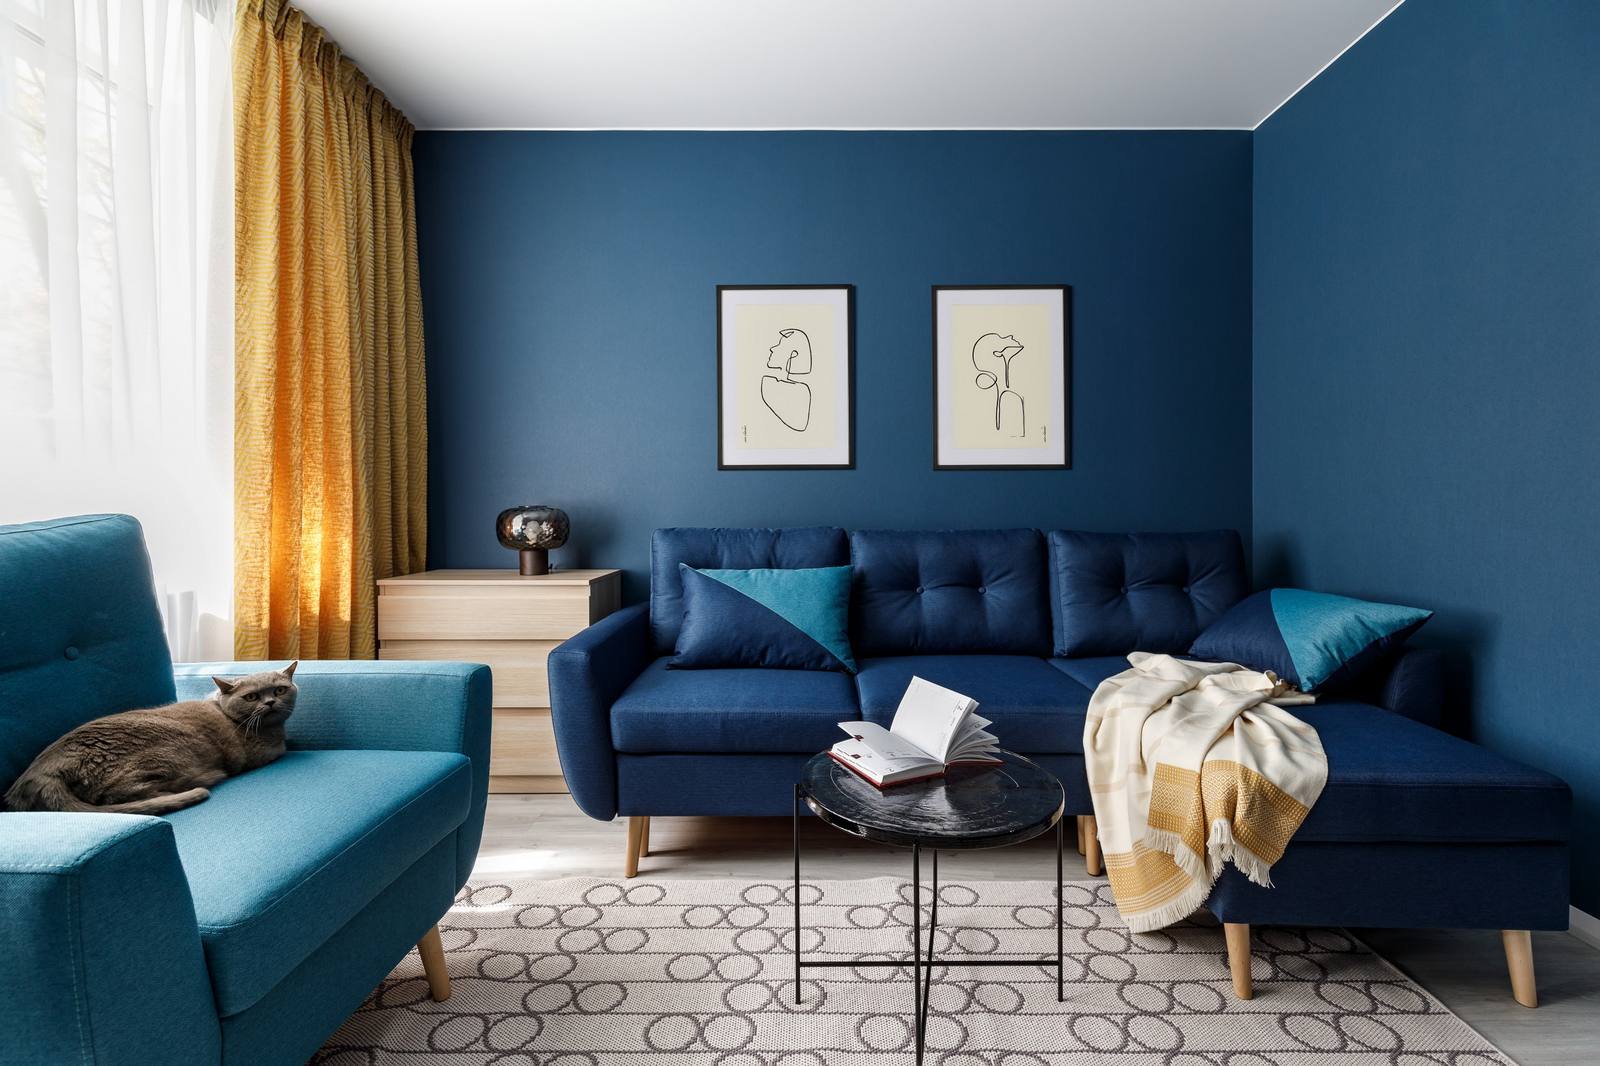 Phòng khách rộng rãi với những tông màu đậm đến nhạt của xanh lam, từ màu sơn bức tường, ghế sofa, vỏ bọc gối tựa, đến ghế bành có màu xanh nhạt hơn. Tất cả tạo nên sự tương phản với sàn và trần nhà sáng màu một cách ấn tượng. 